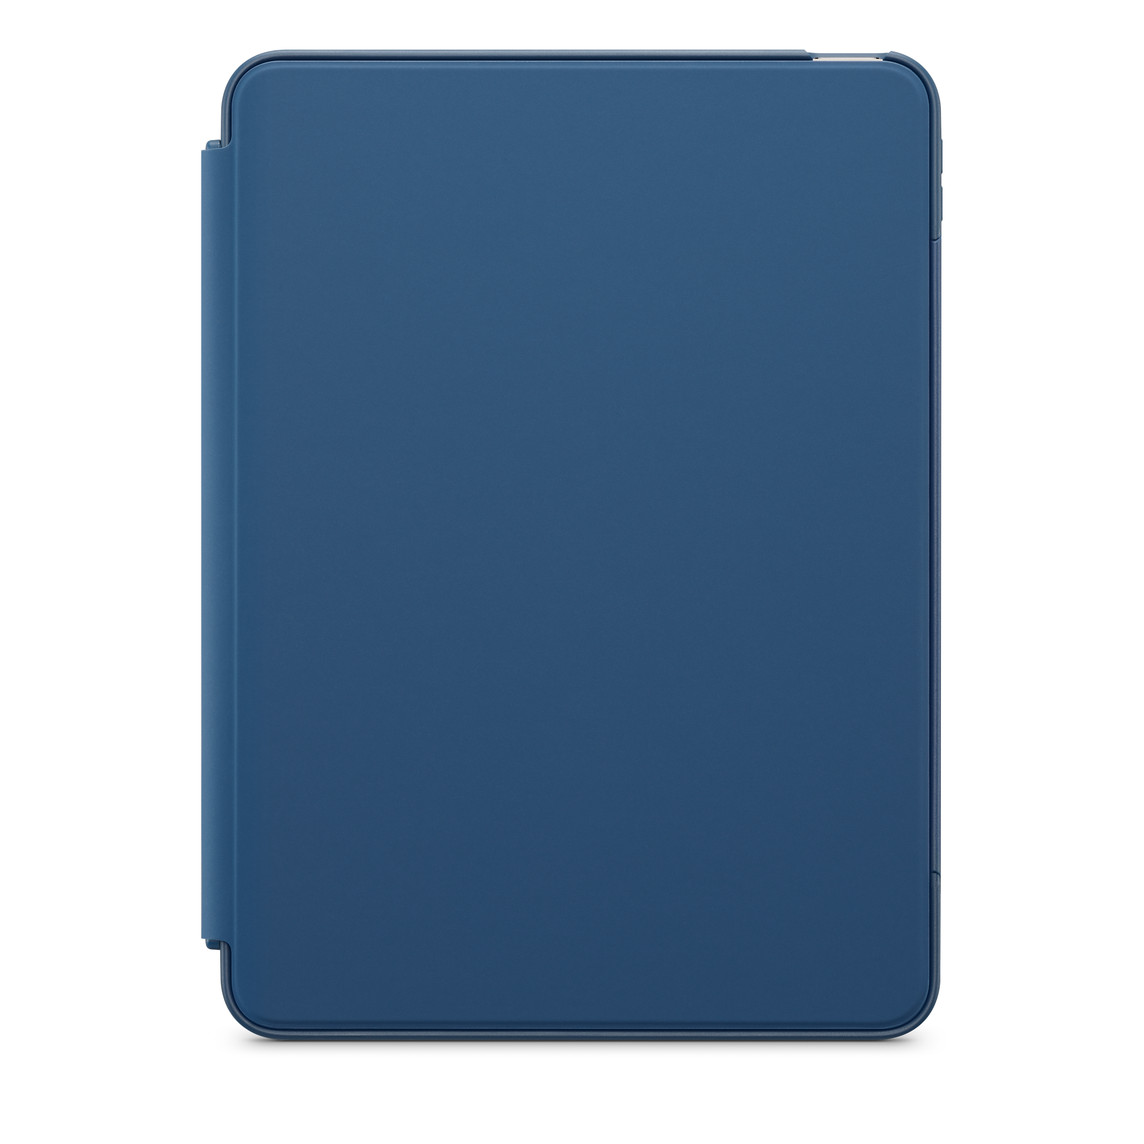 Vista frontal do iPad Air com capa fechada